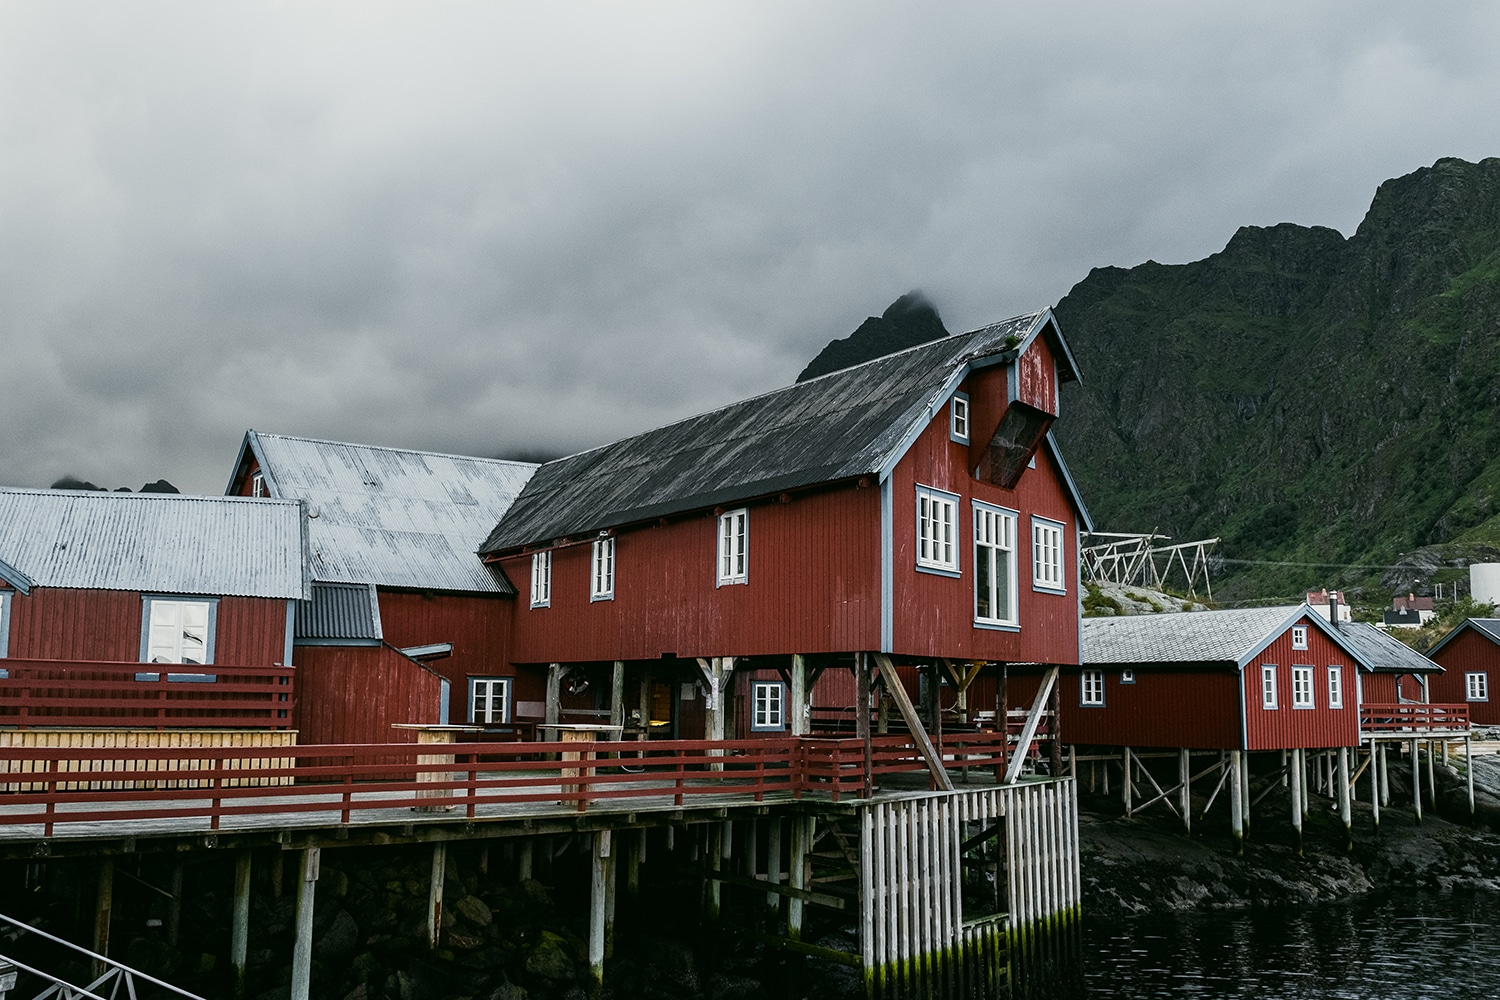 A village de pêcheurs des Lofoten